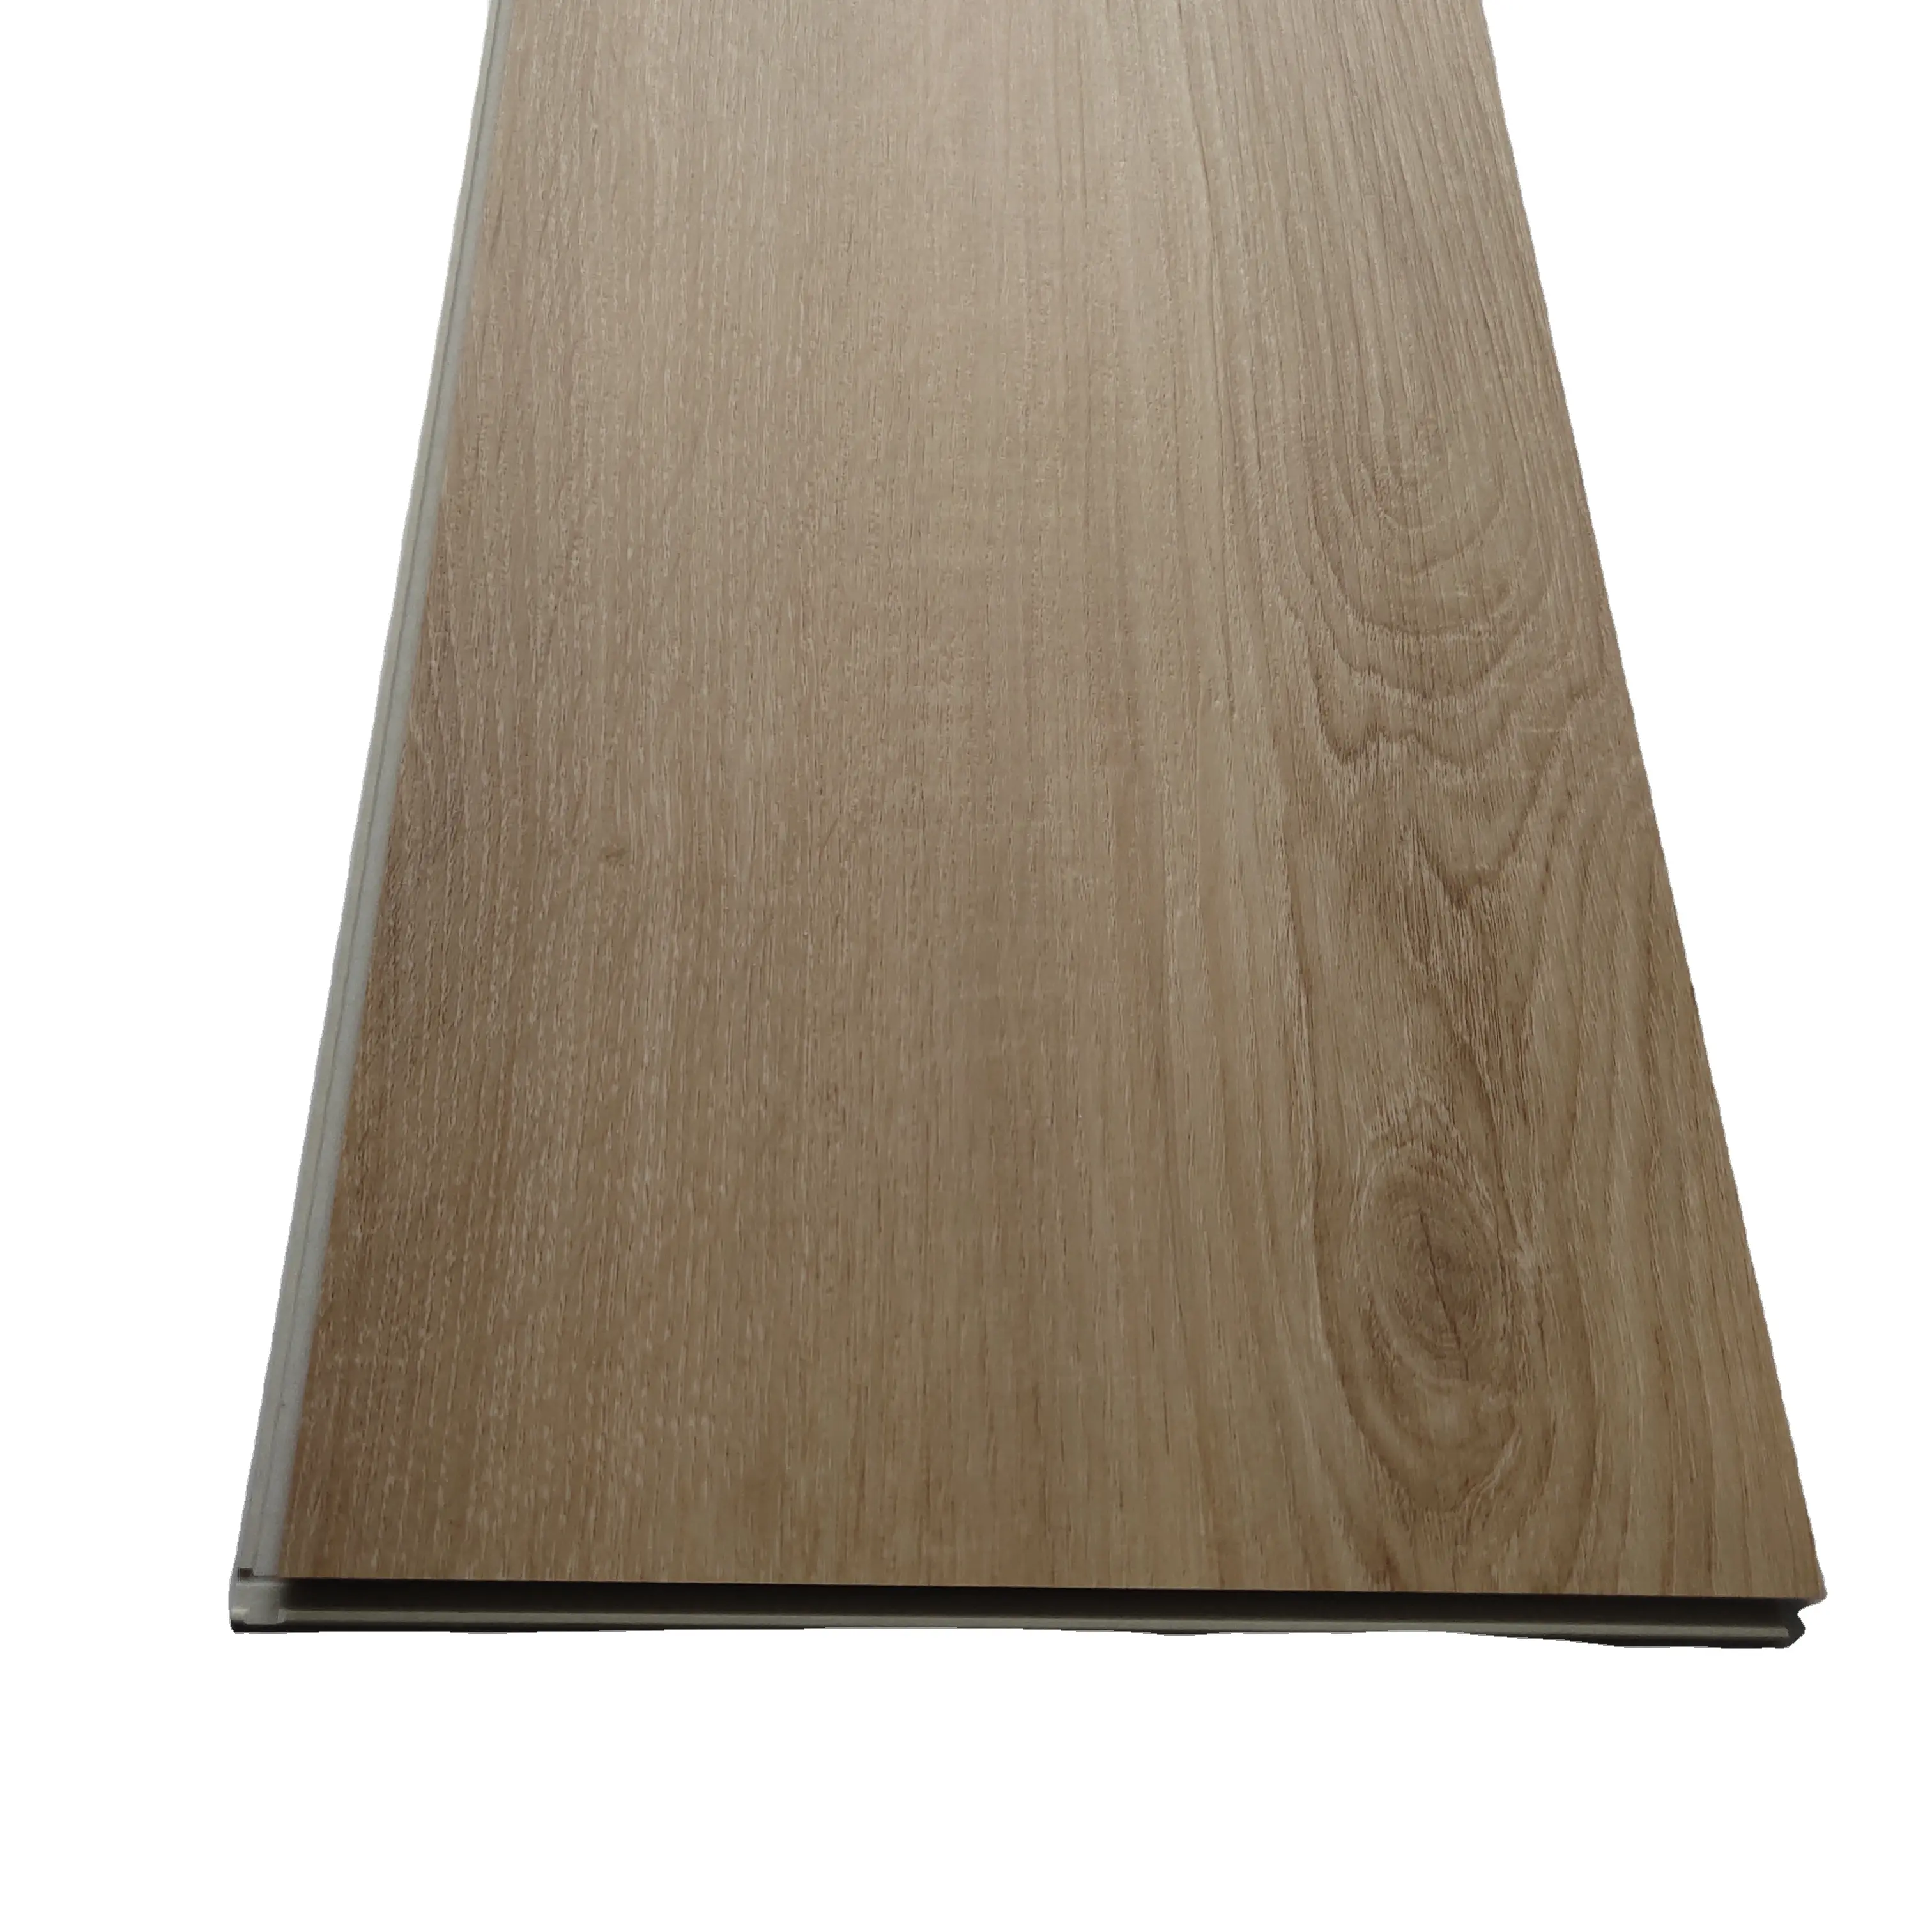 Vendas diretas do fabricante de piso laminado de madeira composto reforçado com espinha de peixe para uso doméstico 12mm